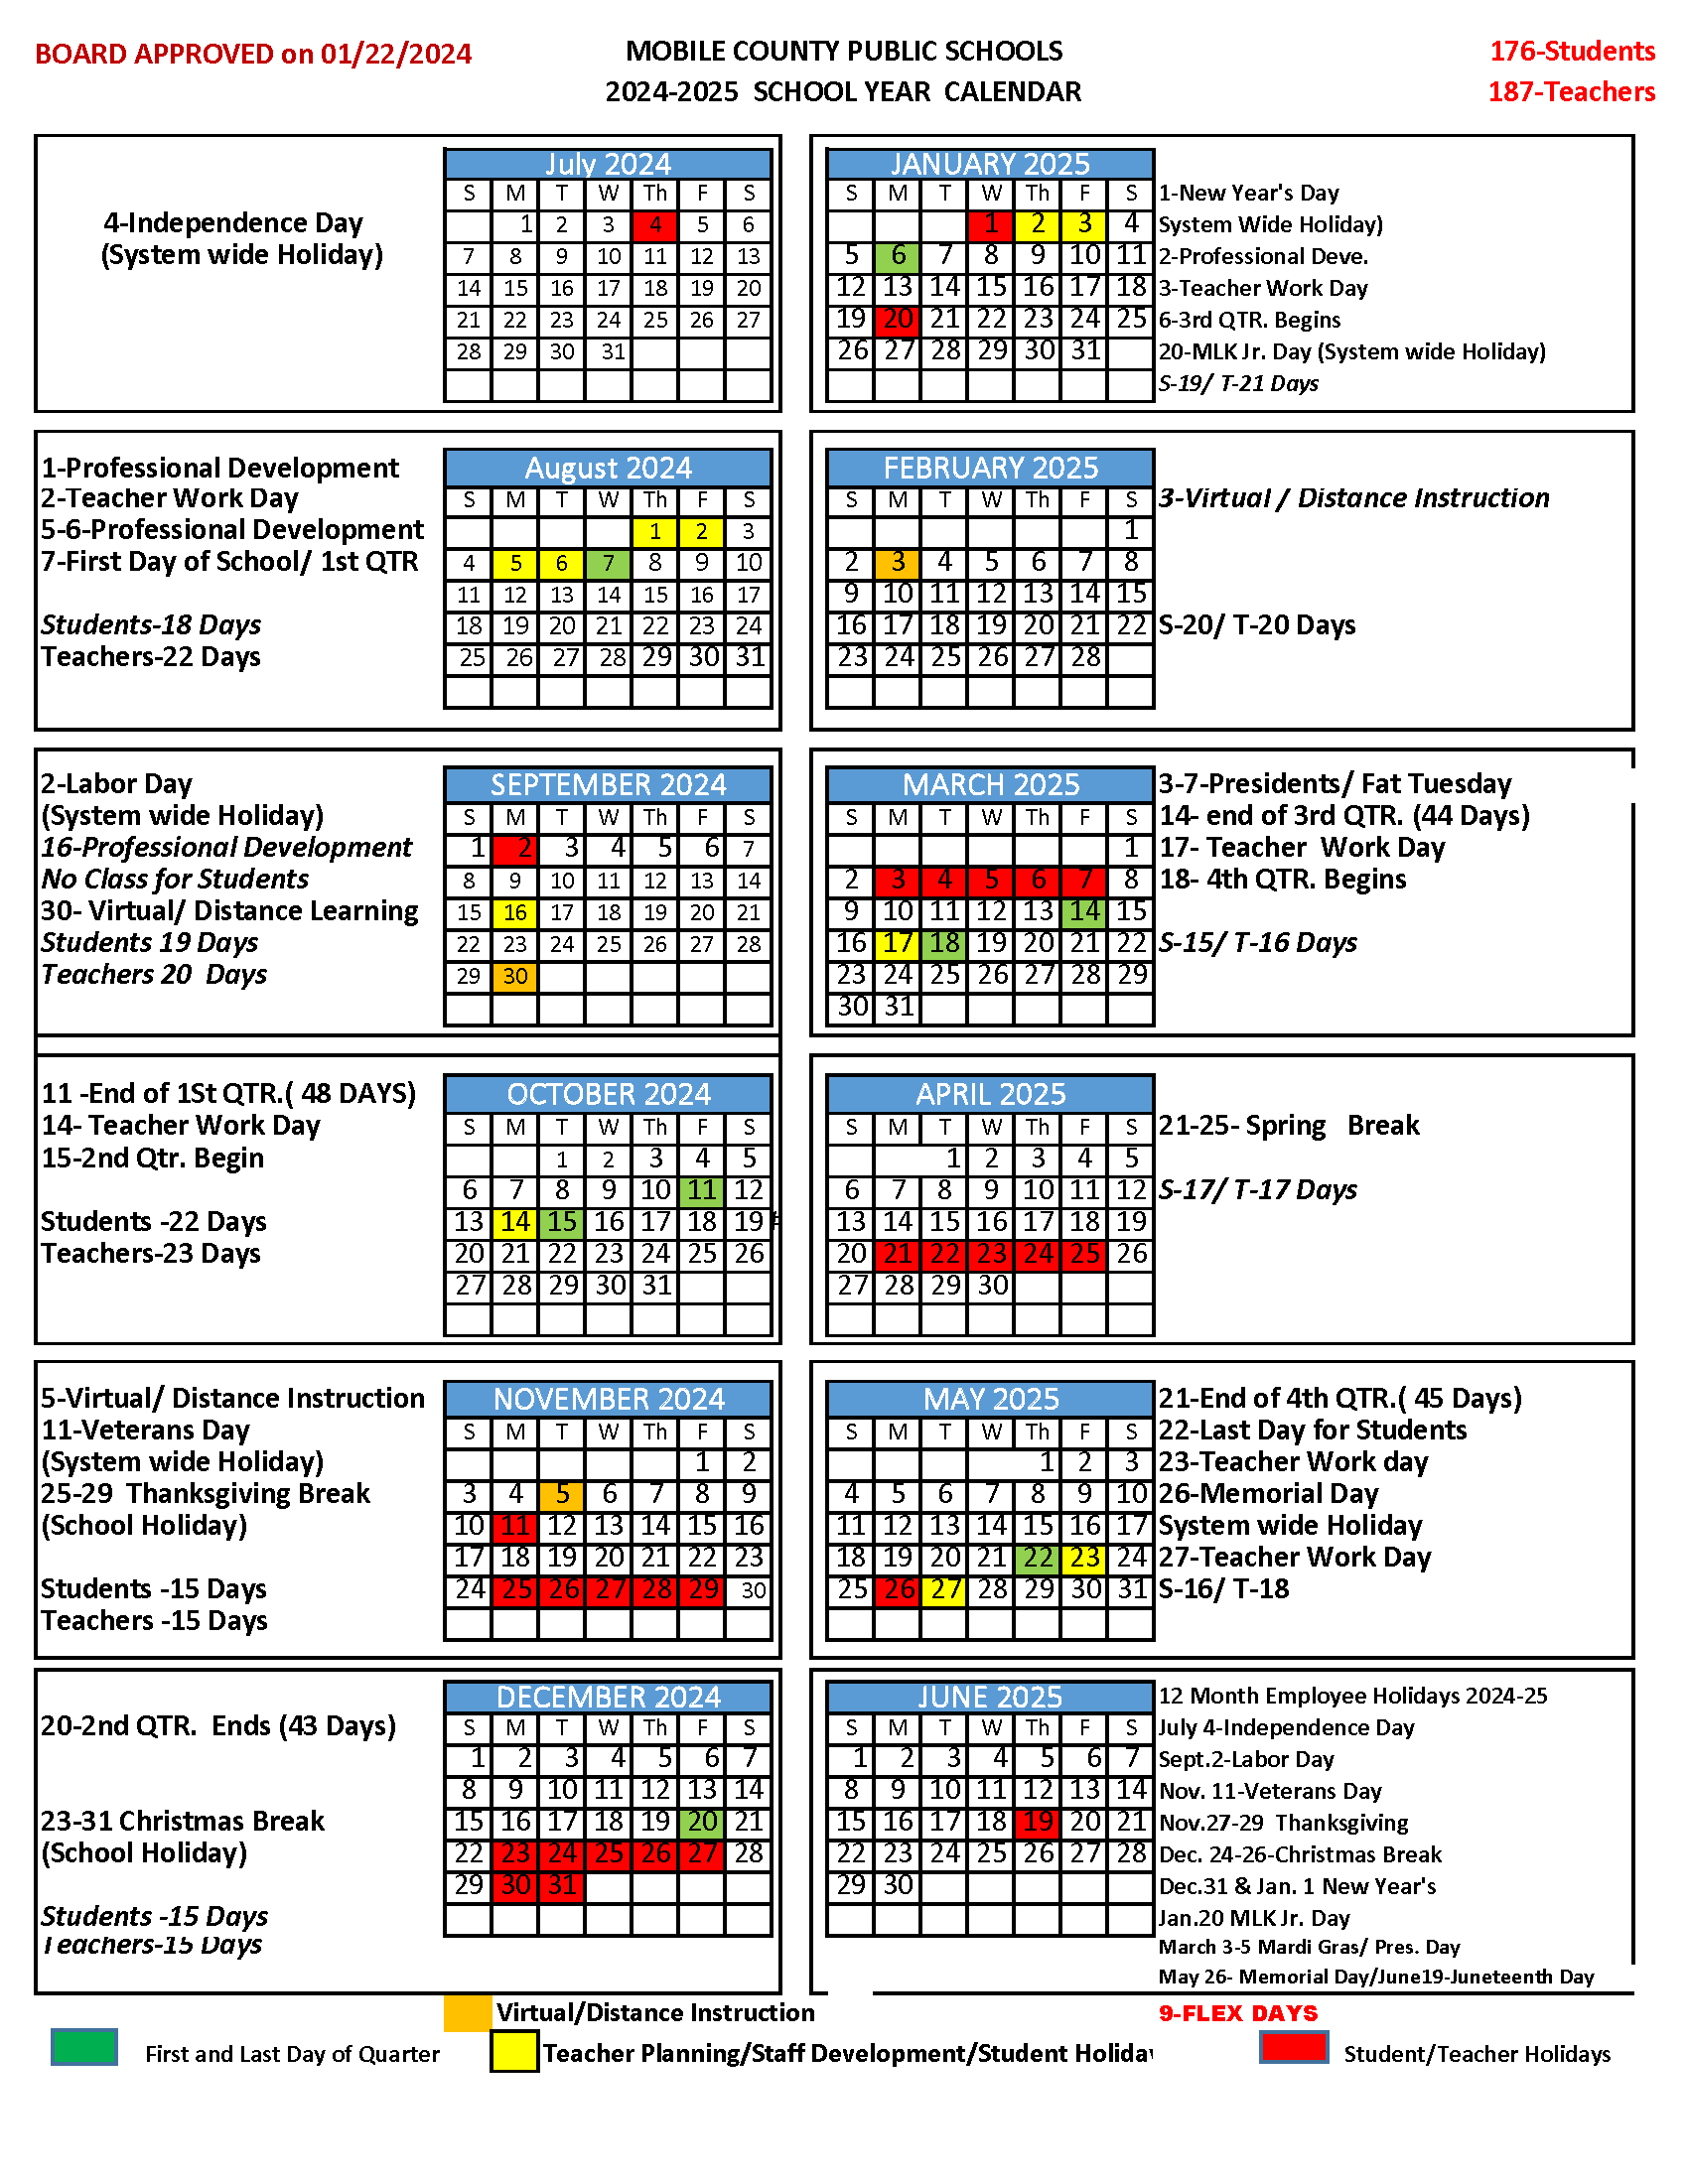 2024-2025 MCPSS School Calendar